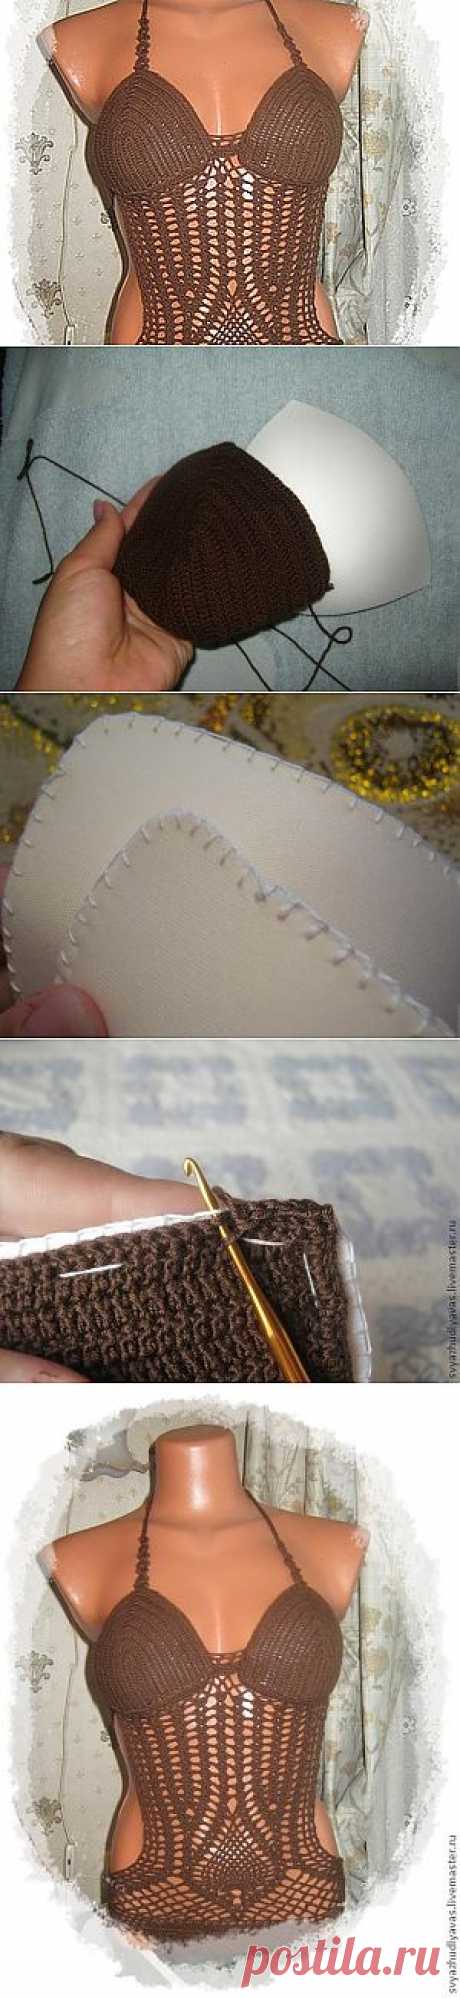 Обвязывание чашечек для купальника - Ярмарка Мастеров - ручная работа, handmade